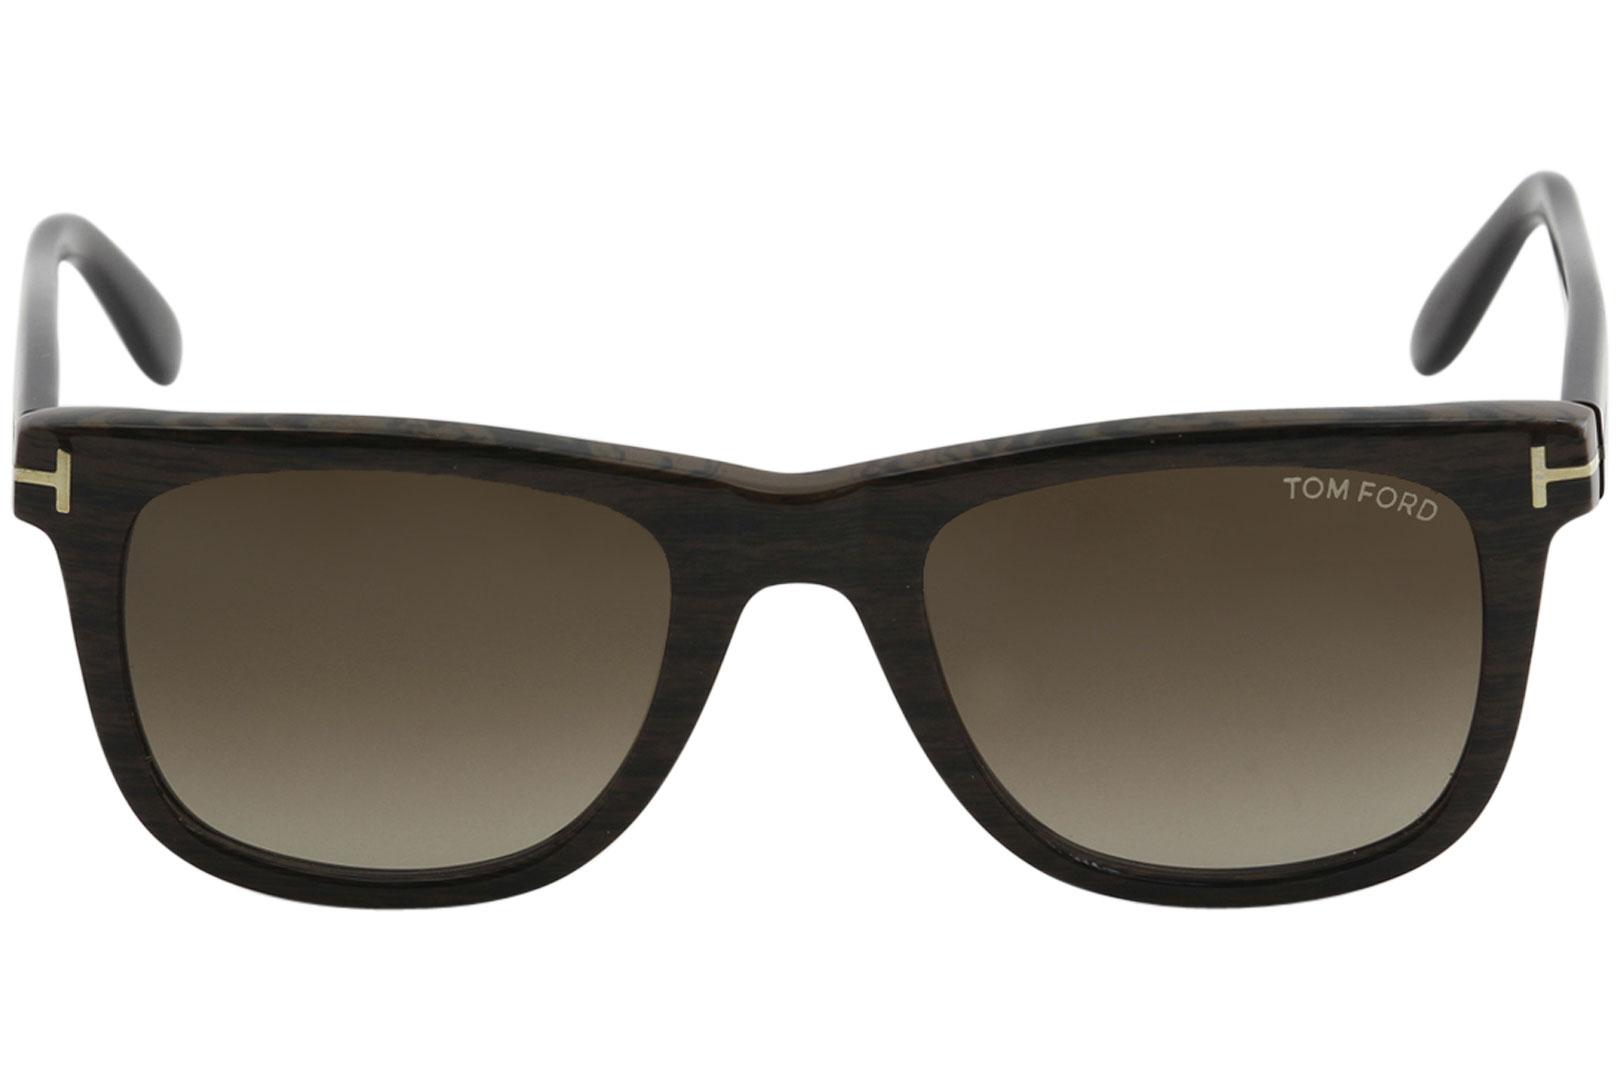 Tom Ford Men's Leo TF9336 TF/9336 Fashion Square Sunglasses 